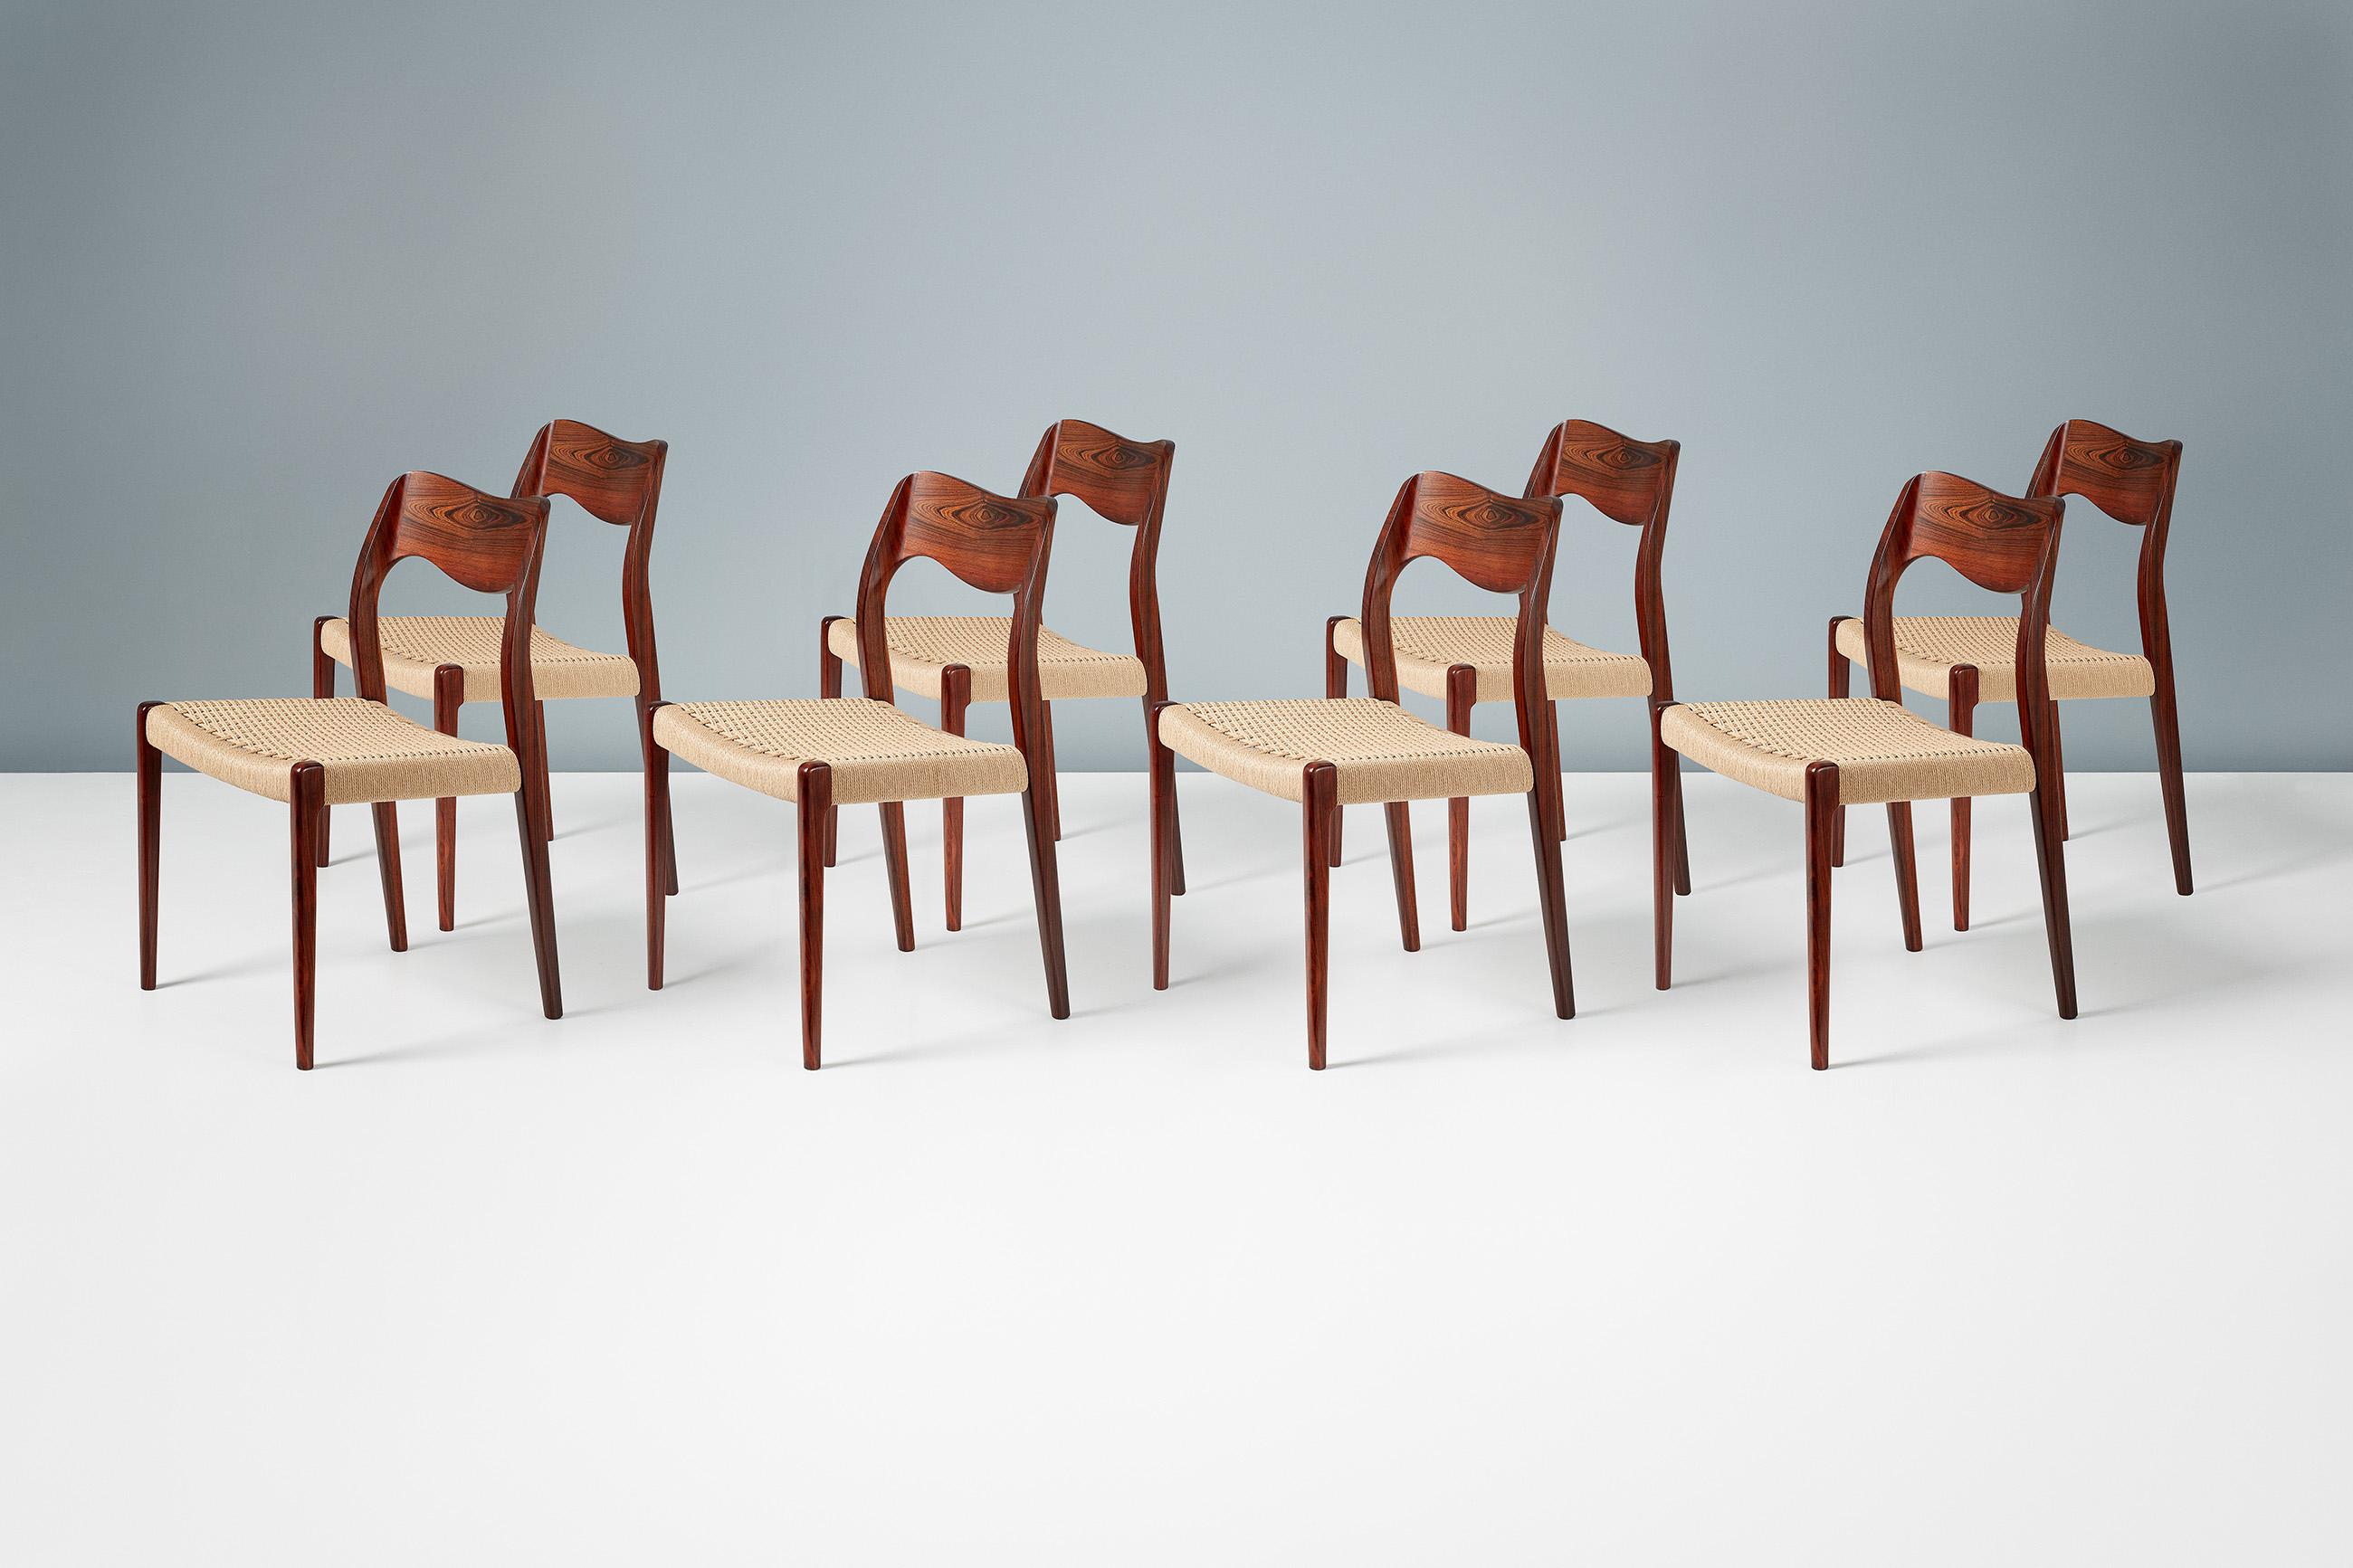 Niels O. Møller

Chaises de salle à manger modèle 71, 1951

Ensemble de 8 chaises de salle à manger en bois de rose conçues par Niels O. Moller pour sa propre entreprise J.L. Moller Mobelfabrik, Danemark. Le modèle 71 a été l'une des premières